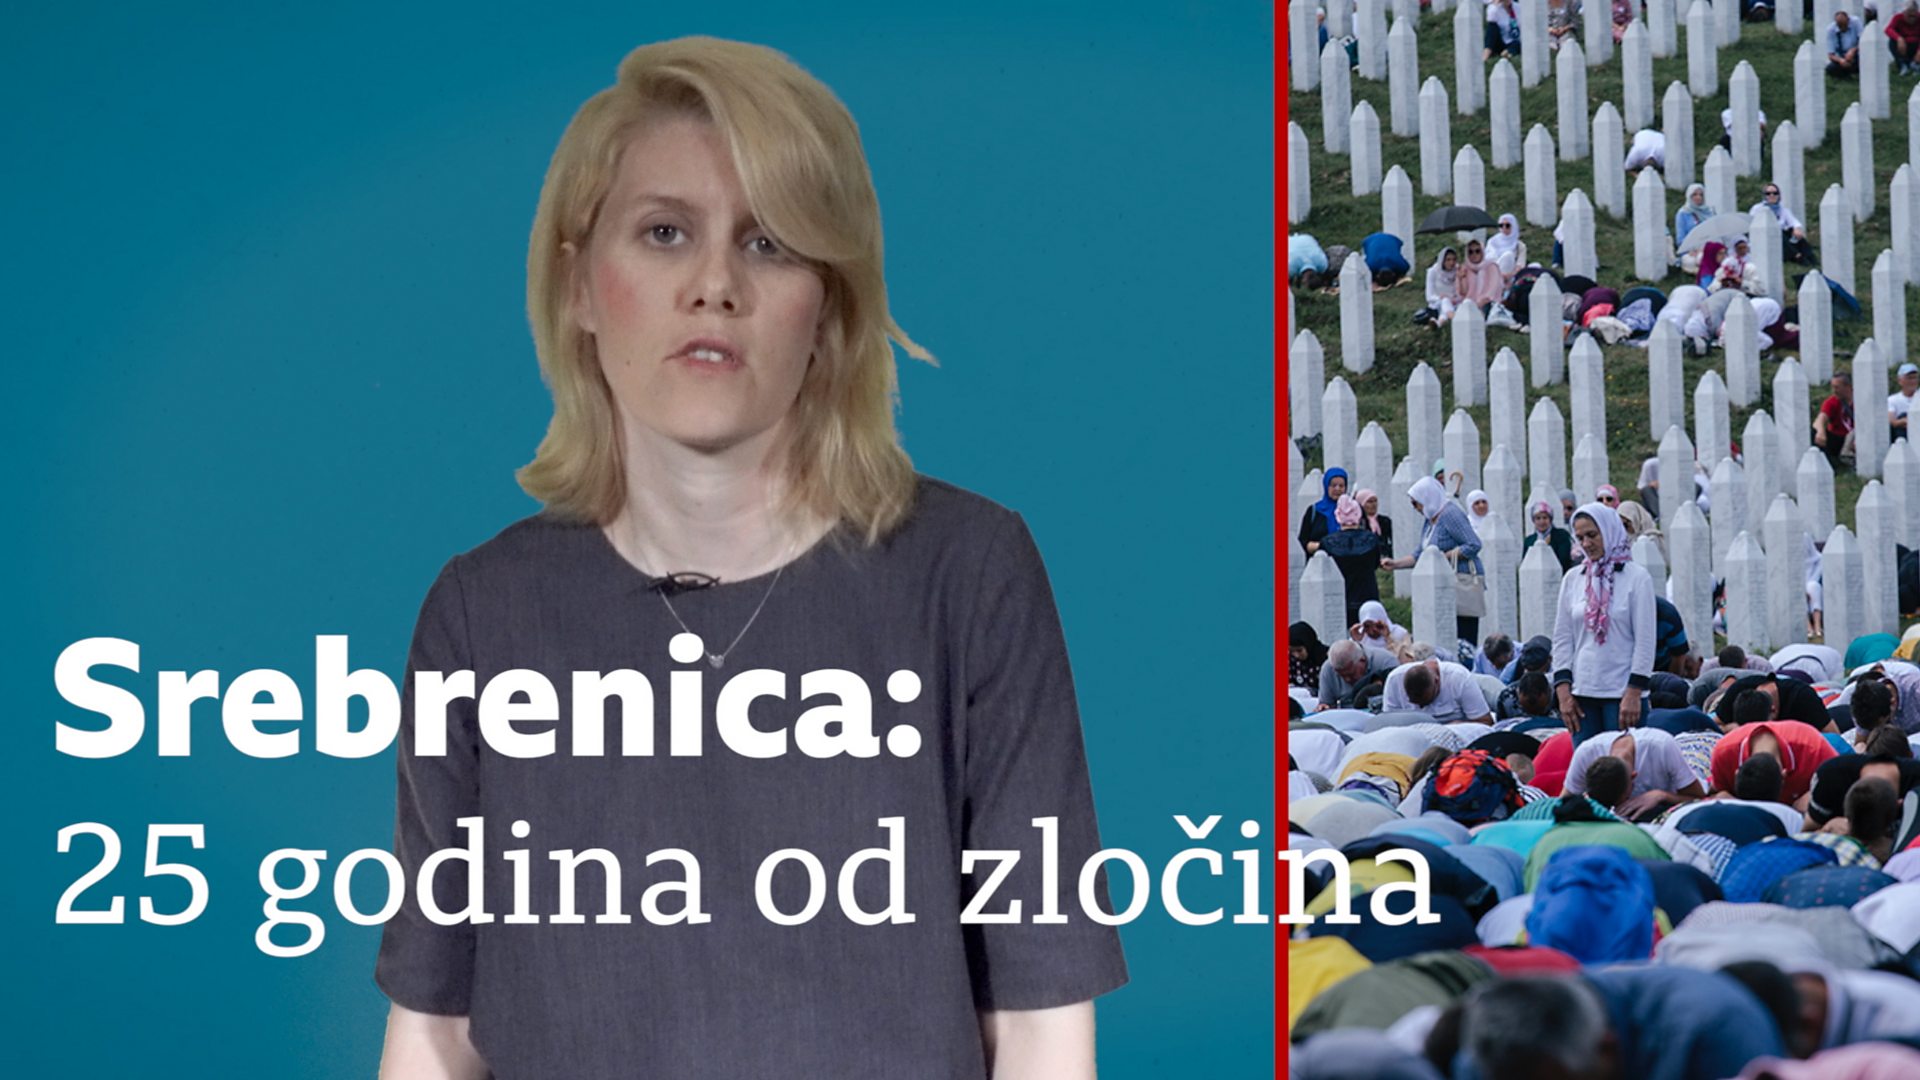 Геноцид у Сребреници 25 година касније: Злоч&